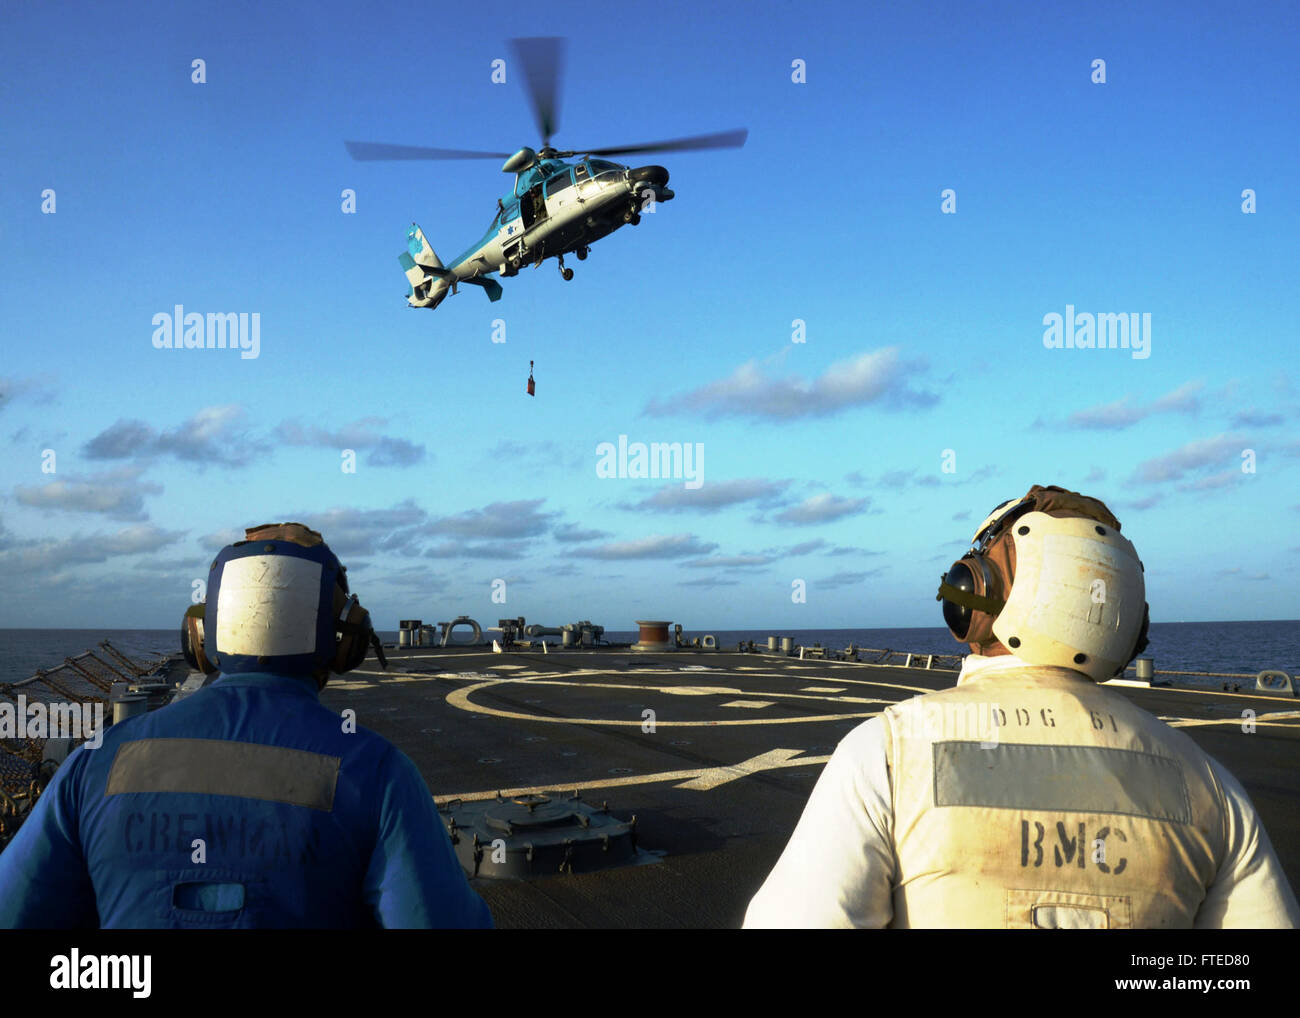 140409-N-CH661-131 MAR MEDITERRÁNEO (Abril 9, 2014) - Un helicóptero Panther565, asignado a los israelíes Sa'ar 5-clase corbeta INS Eilat (501), lleva a cabo un reabastecimiento vertical con el misil guiado por el destructor USS Ramage (DDG 61) en apoyo del ejercicio Noble, Dina, una multi-nacional anual de ejercicio de entrenamiento realizado con las fuerzas navales israelíes y helénica. Ramage, homeported en Norfolk, Virginia, es un despliegue programado apoyar operaciones de seguridad marítima y los esfuerzos de cooperación de seguridad de teatro en los EE.UU. 6ª Flota de la zona de operaciones. (Ee.Uu. Navy photo by Mass Communication Specialist Foto de stock